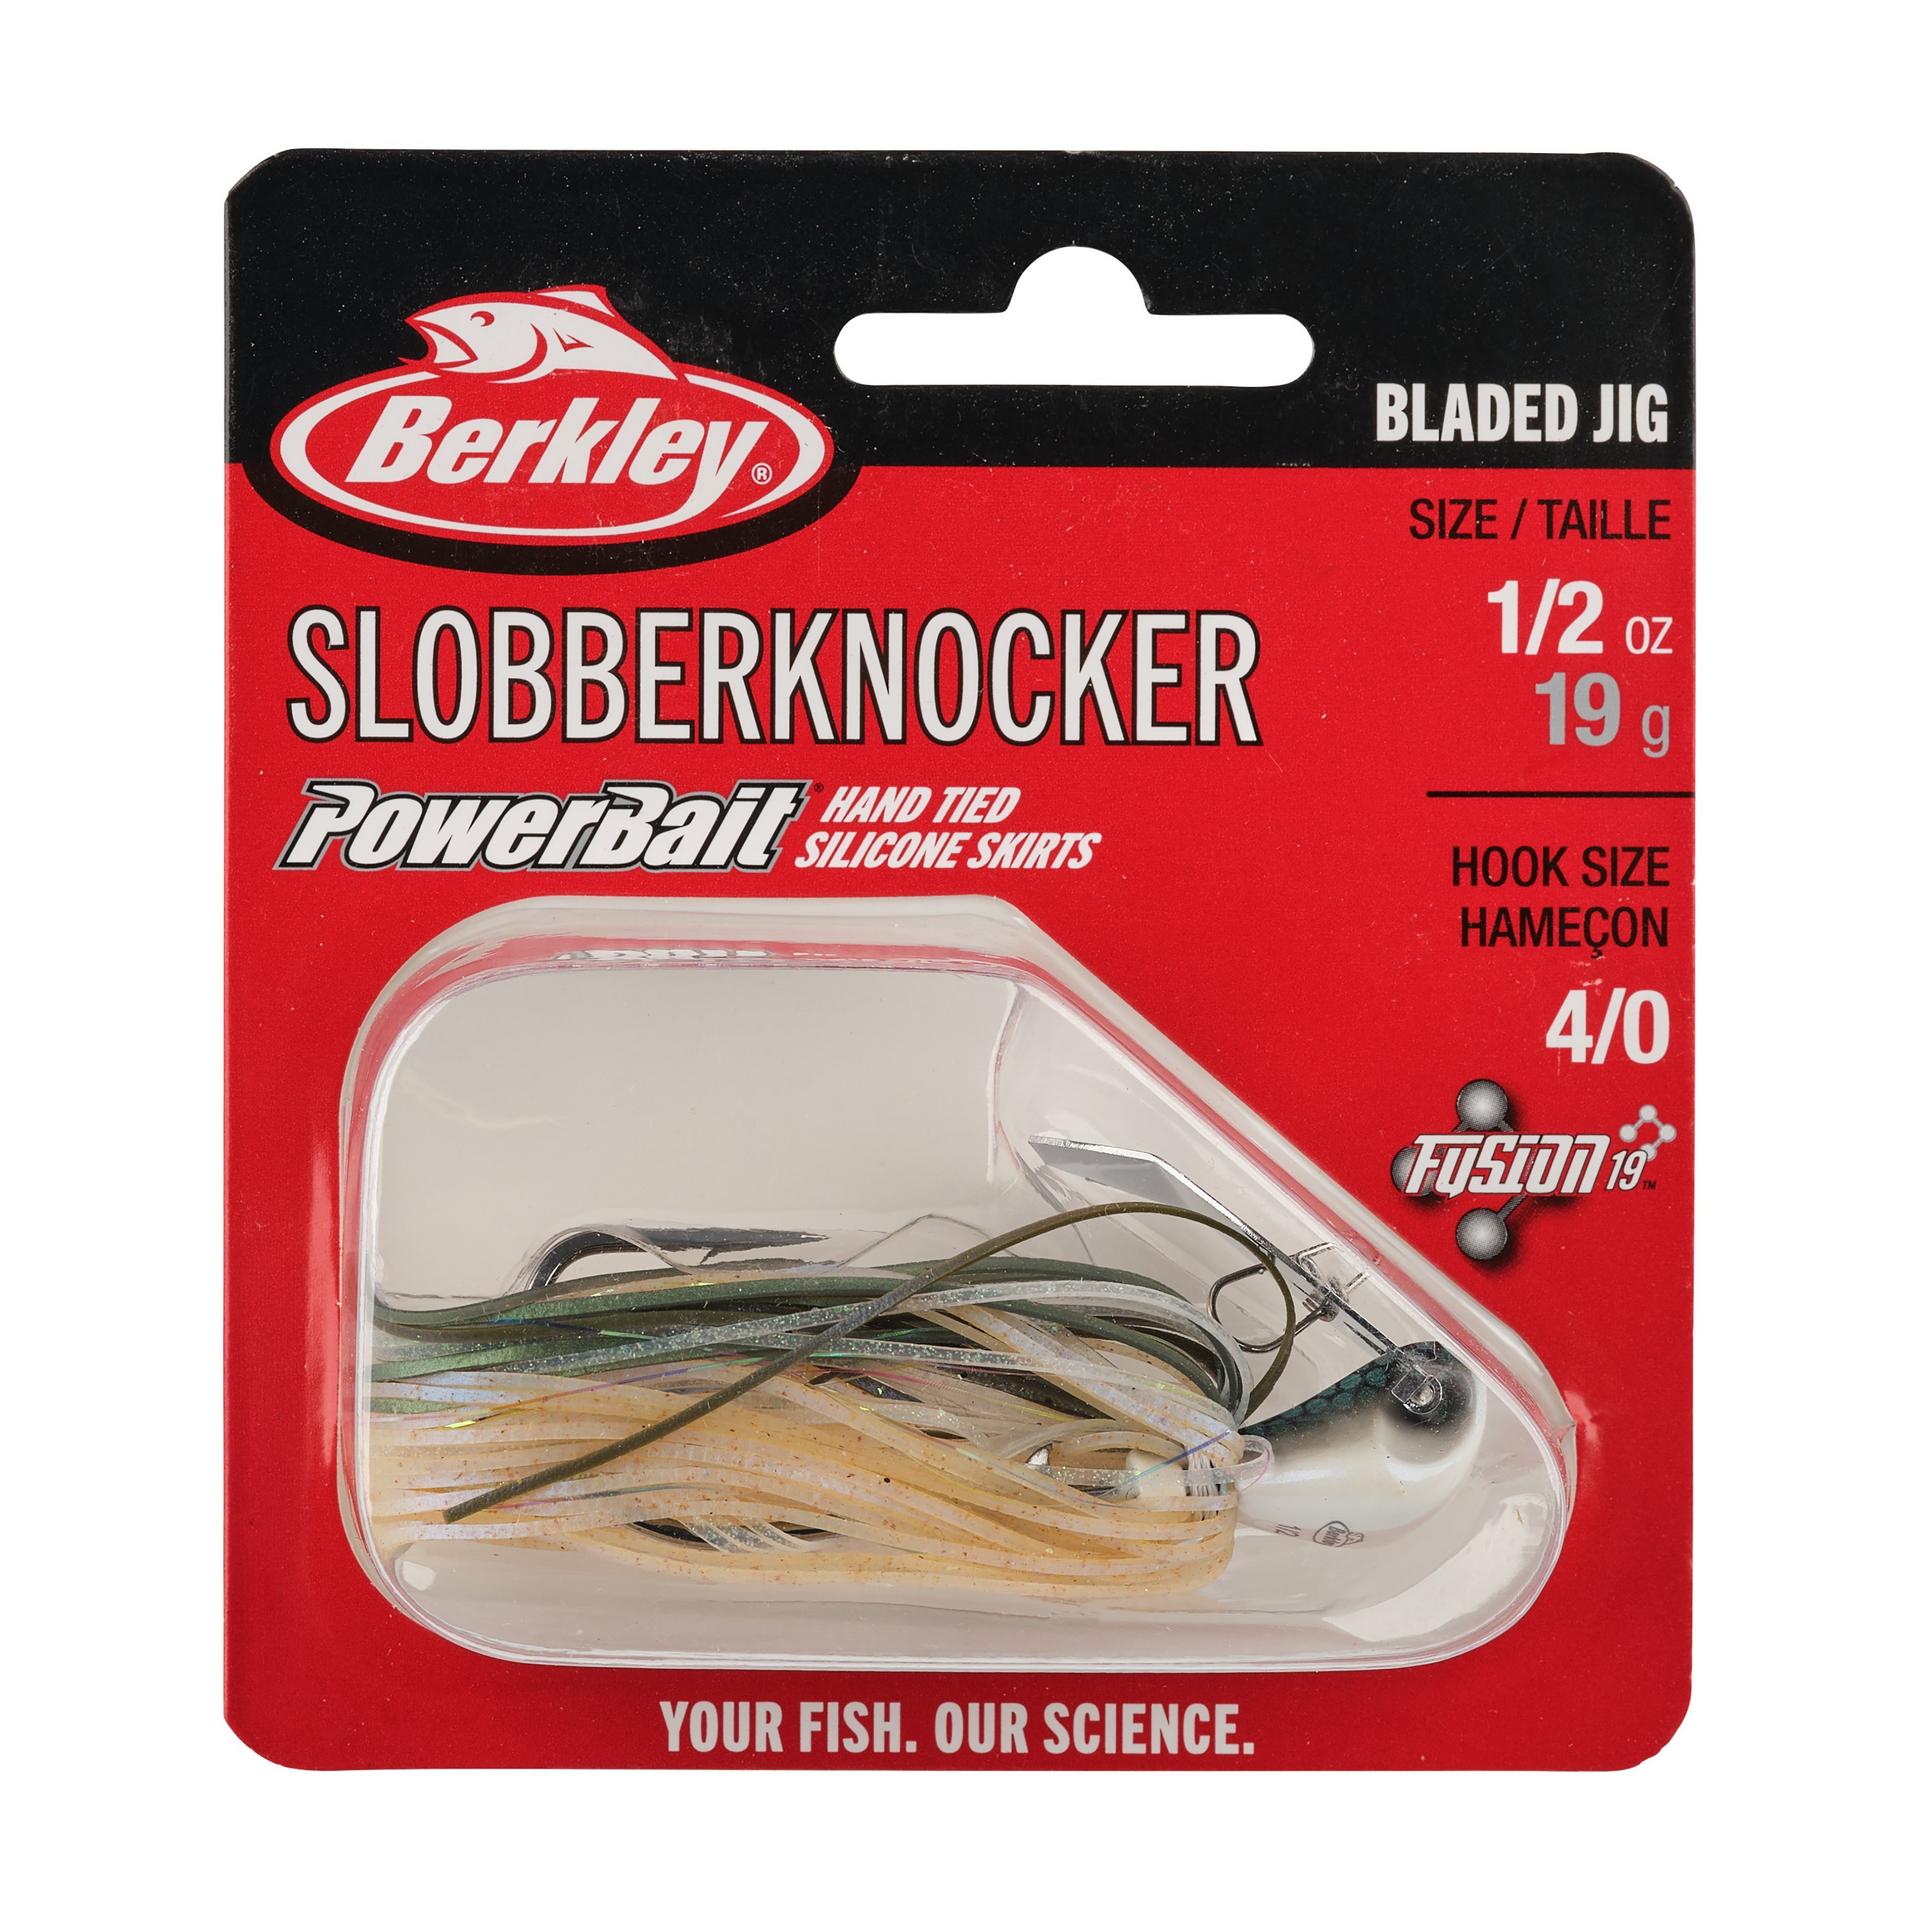 Berkley SlobberKnocker 1 2oz Herring PKG | Berkley Fishing